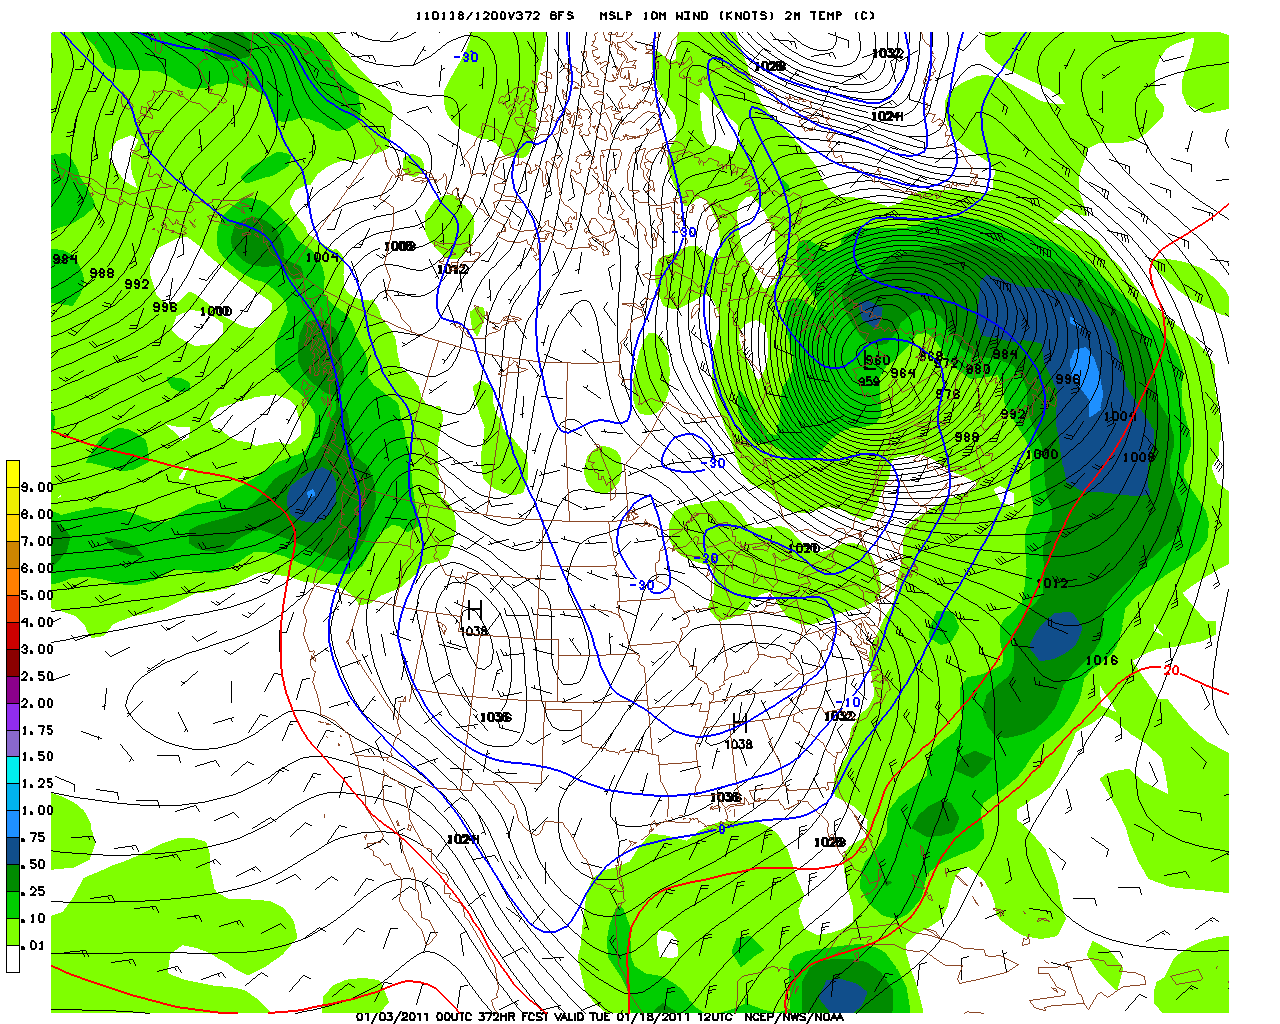 "GFS Forecast Hour 372 (00 UTC 03 January 2011 Initialization)"